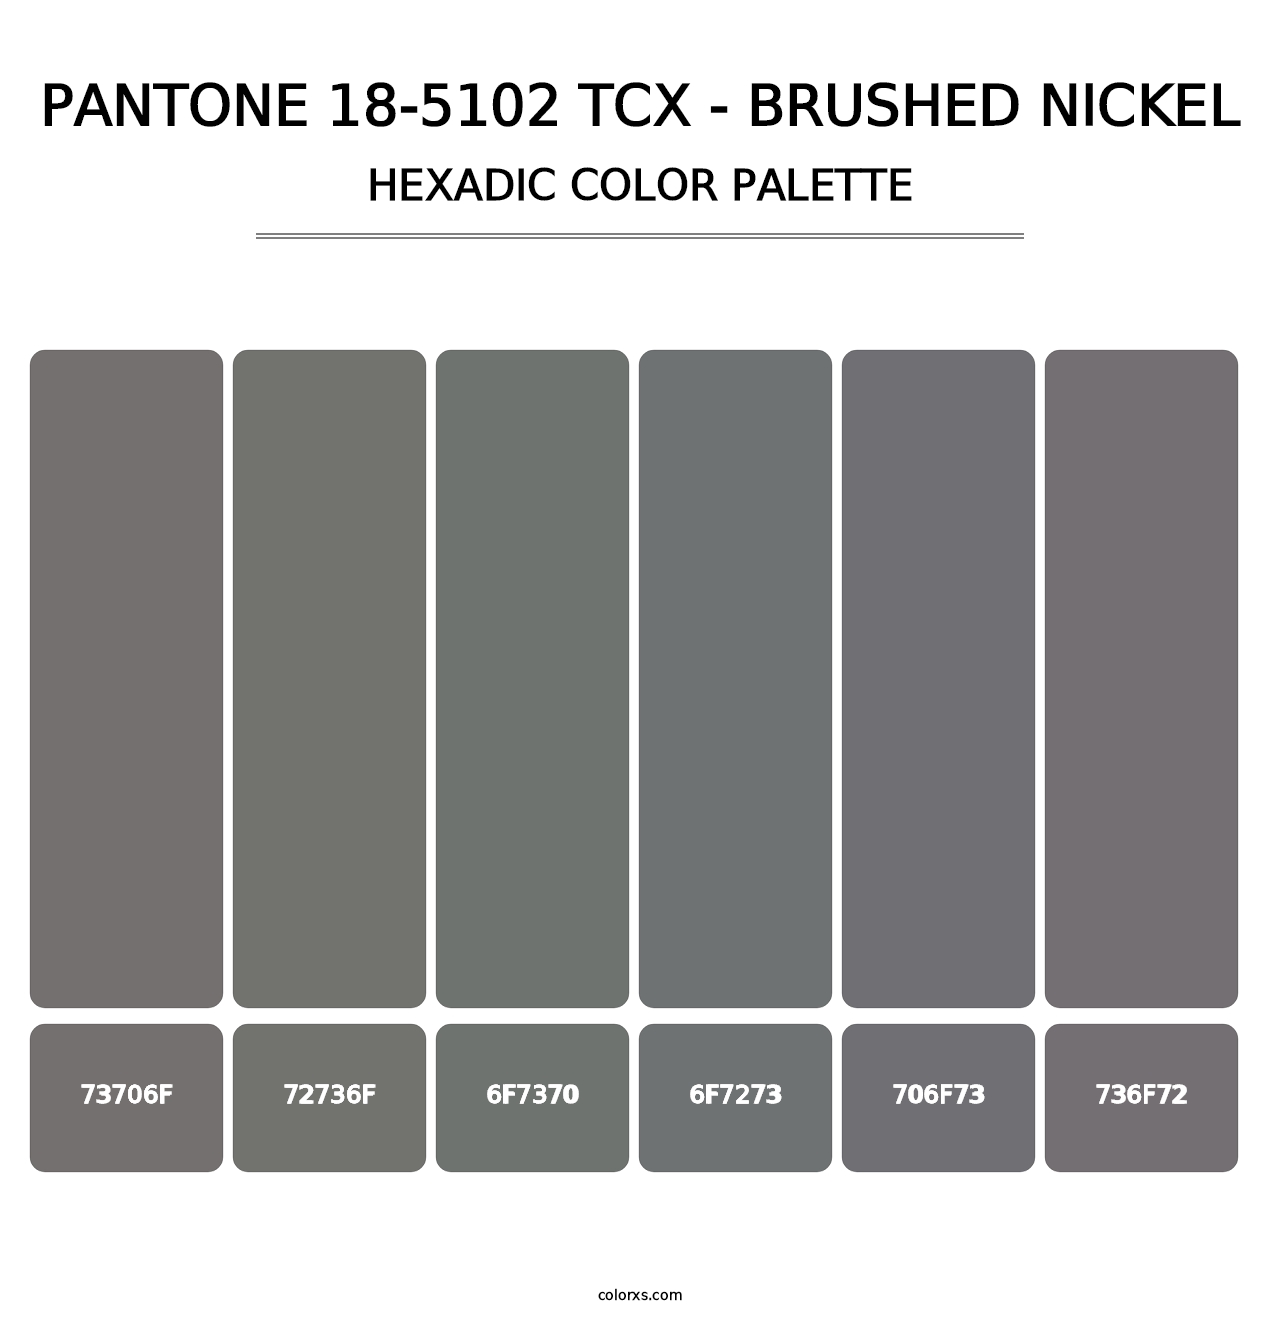 PANTONE 18-5102 TCX - Brushed Nickel - Hexadic Color Palette